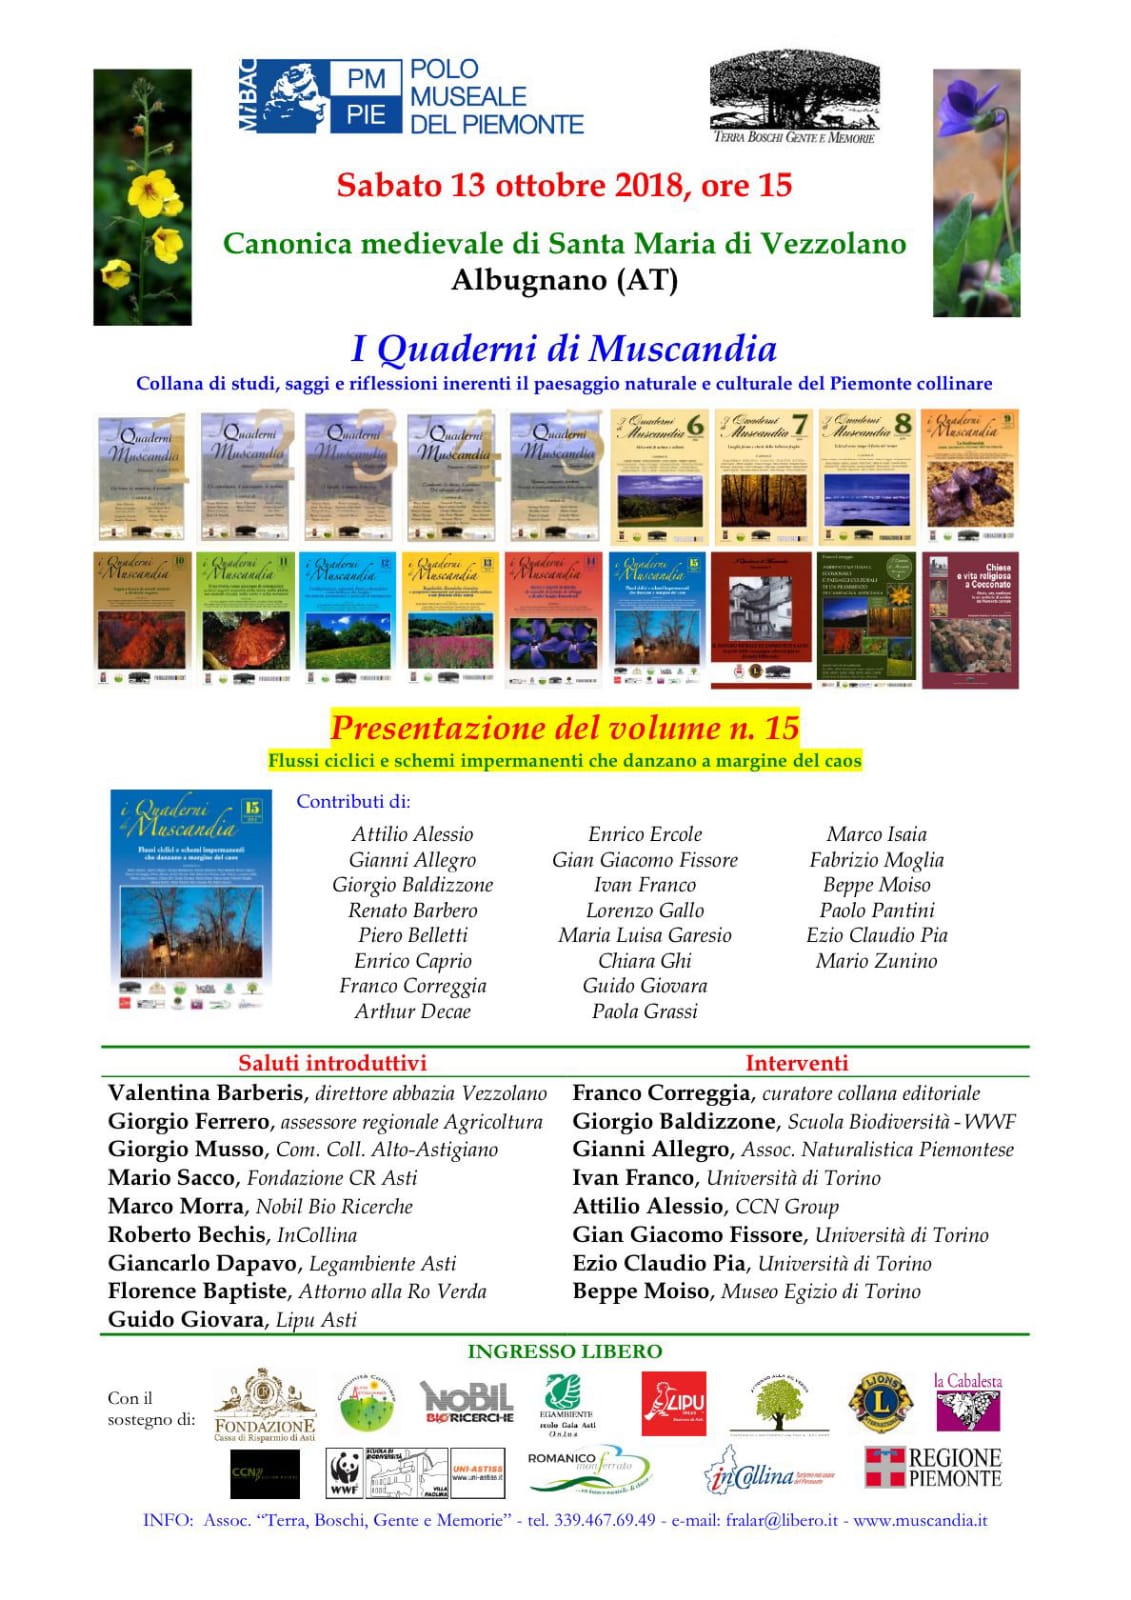 Depliant della Presentazione del Volume n° 15 dei Quaderni di Muscandia, sabato 13 ottobre 2018 presso la Canonica di Santa Maria di Vezzolano ad Albugnano.